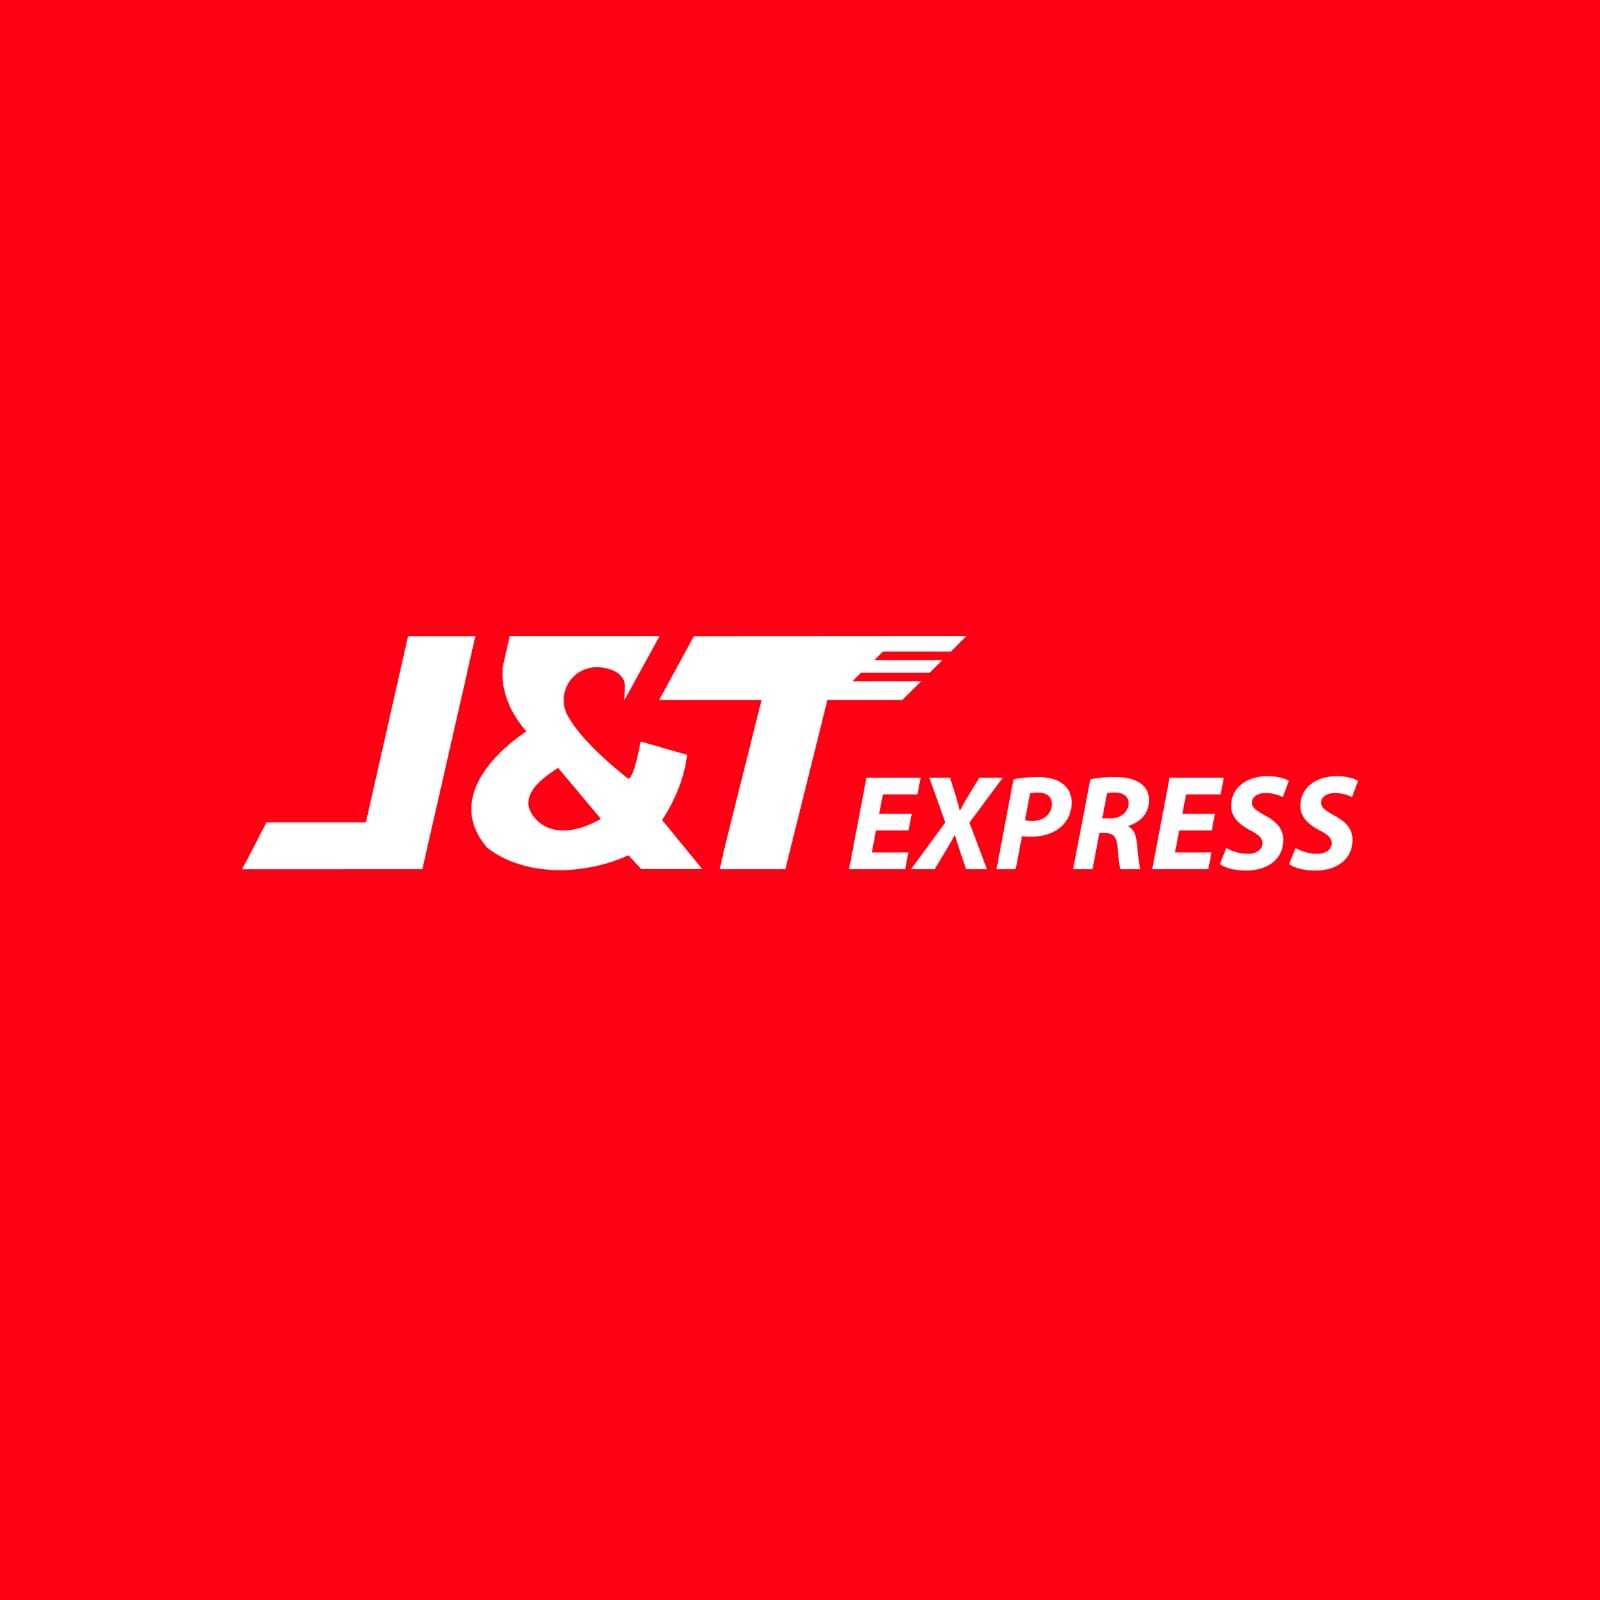 J&T Express Bali Nusra